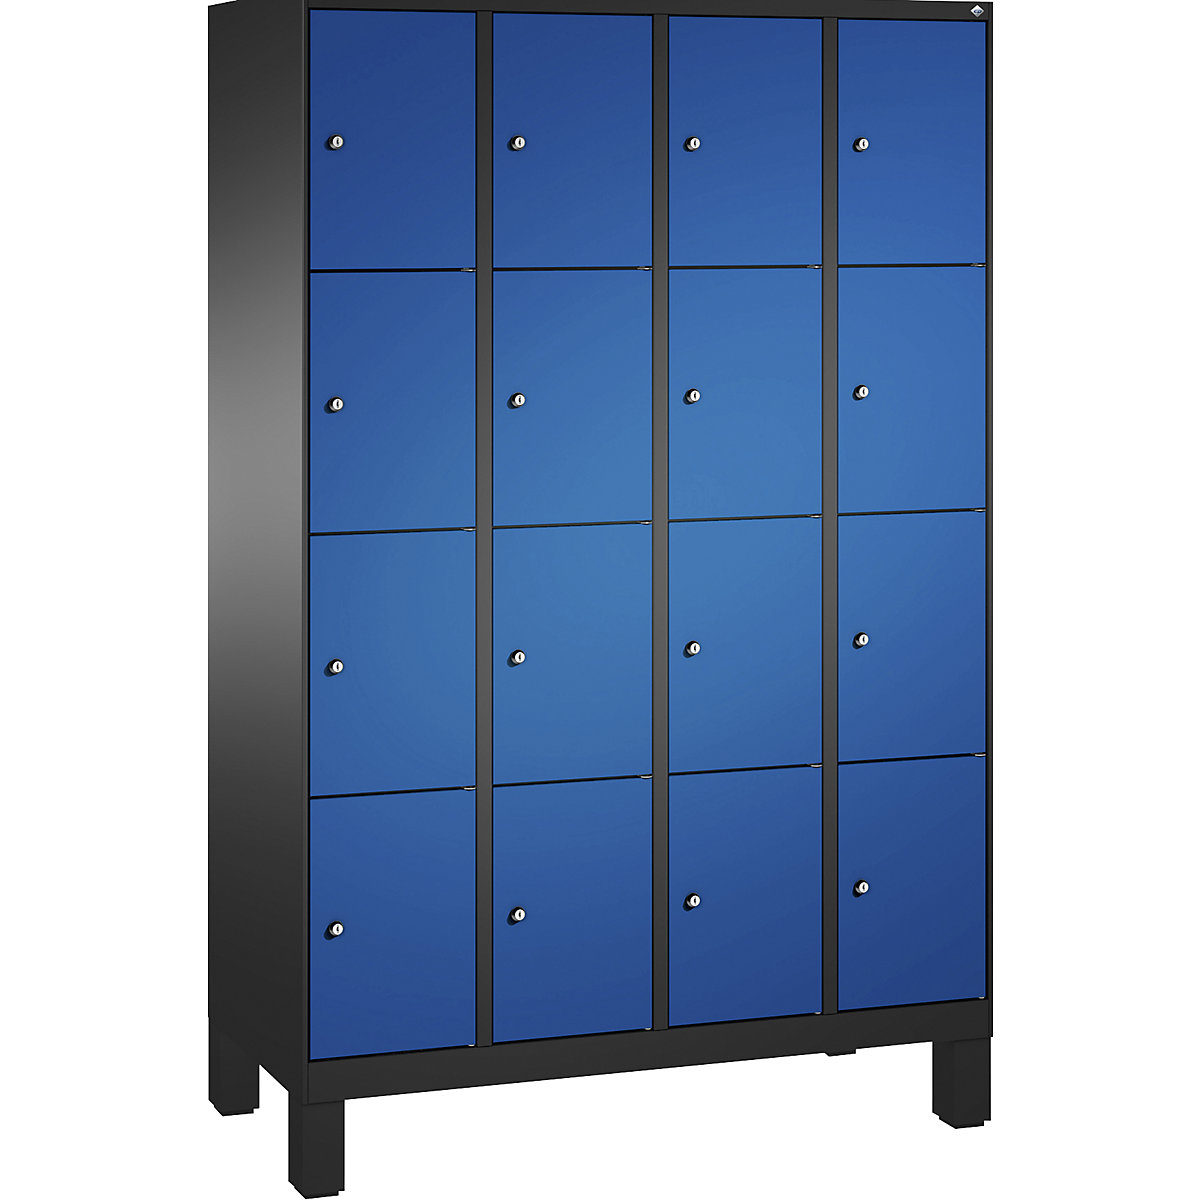 Armoire à casiers sur pieds EVOLO – C+P, 4 compartiments, 4 casiers chacun, largeur compartiments 300 mm, gris noir / bleu gentiane-3